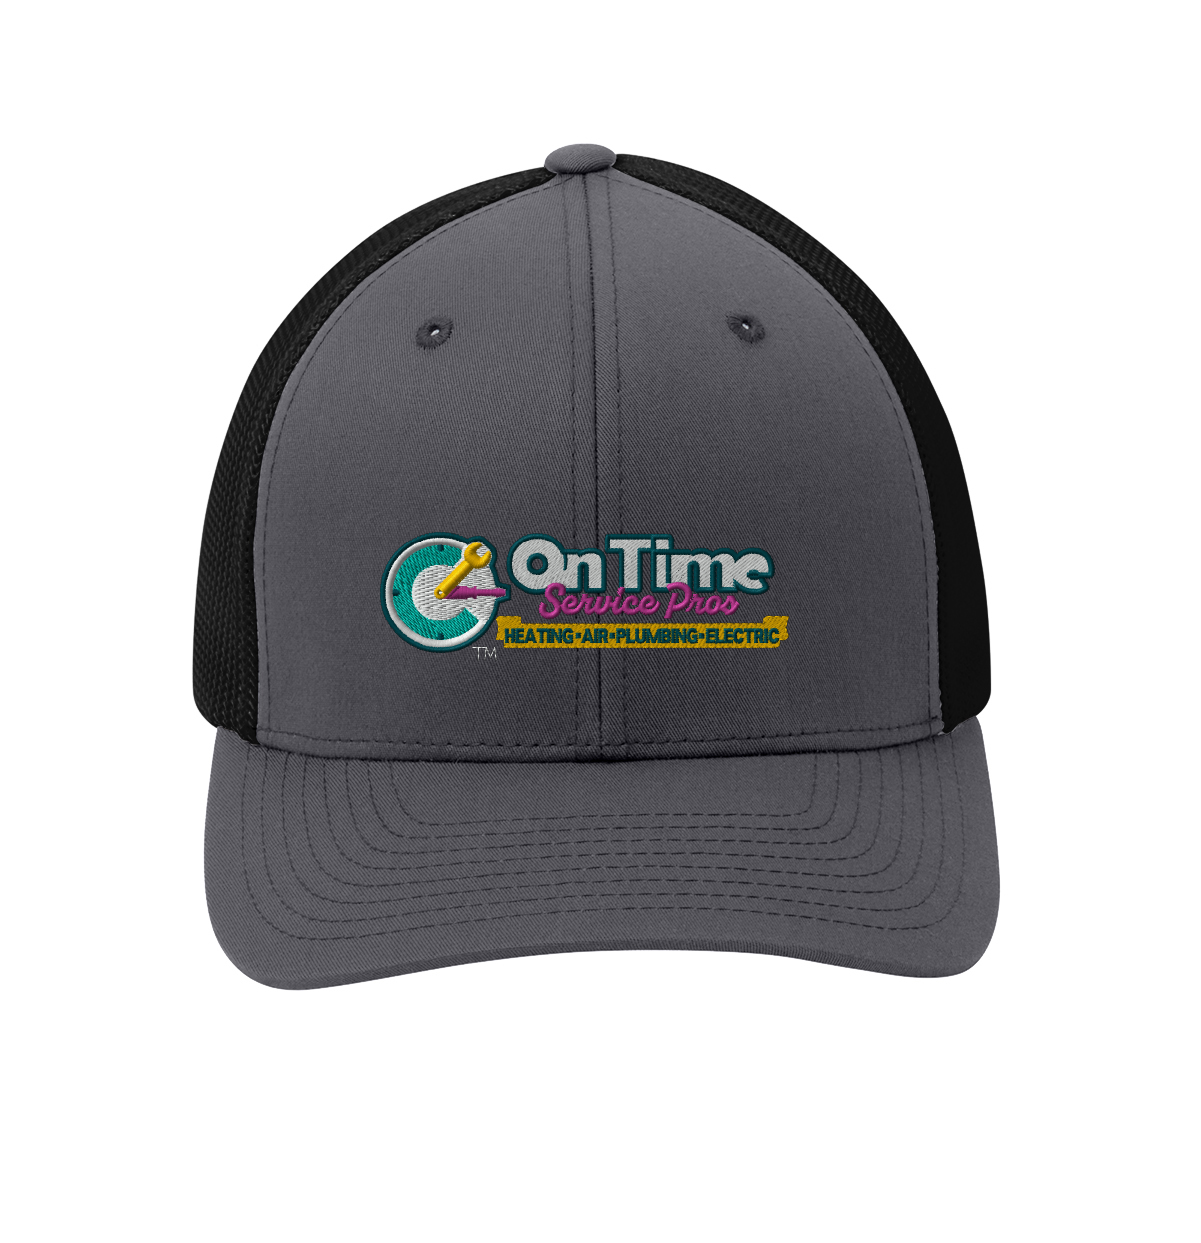 On Time Service Pros Port Authority Flexfit Mesh Back Cap